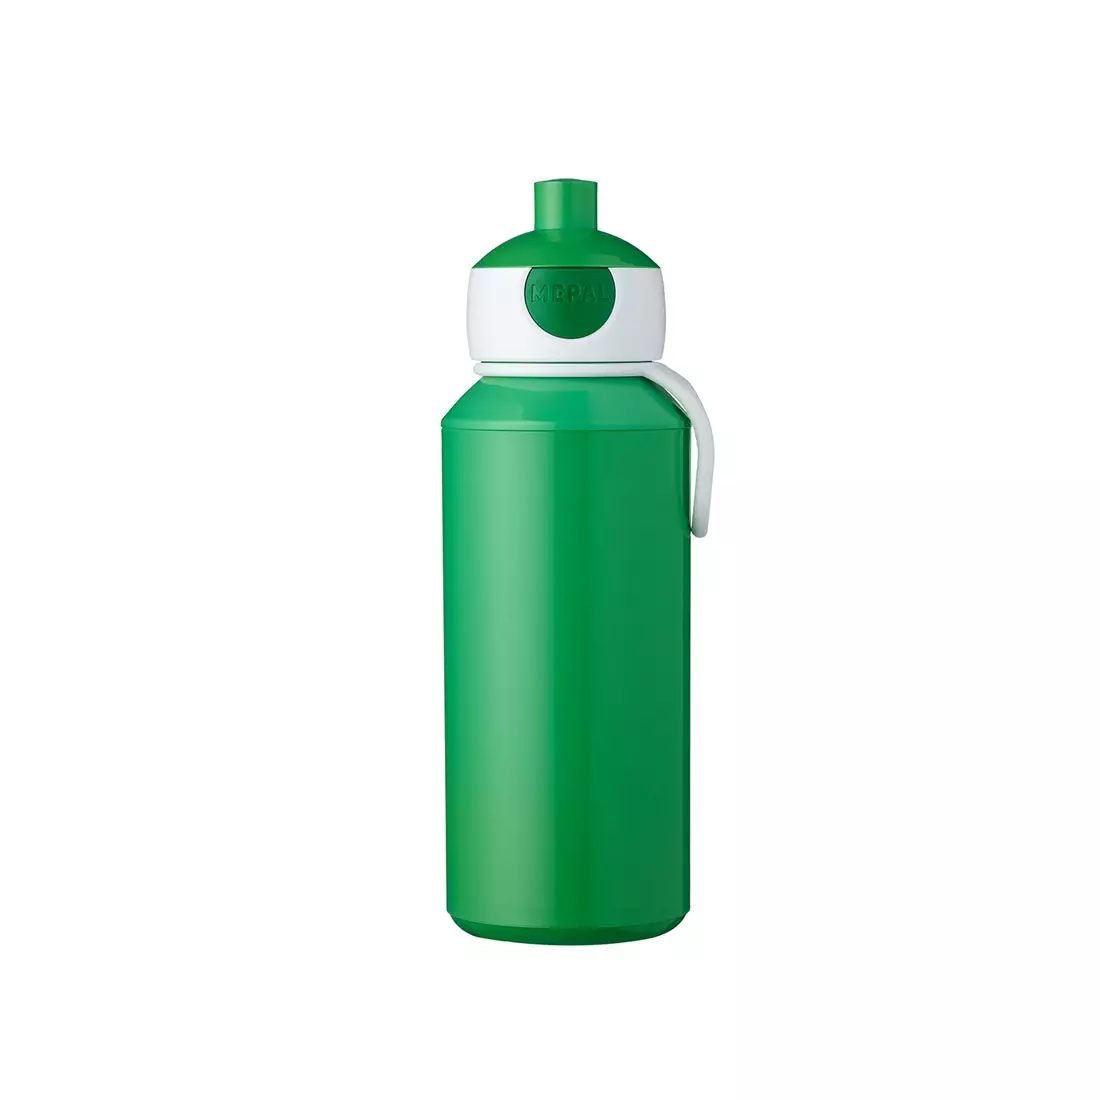 MEPAL POP-UP CAMPUS wasserflasche für kinder 400 ml, grün